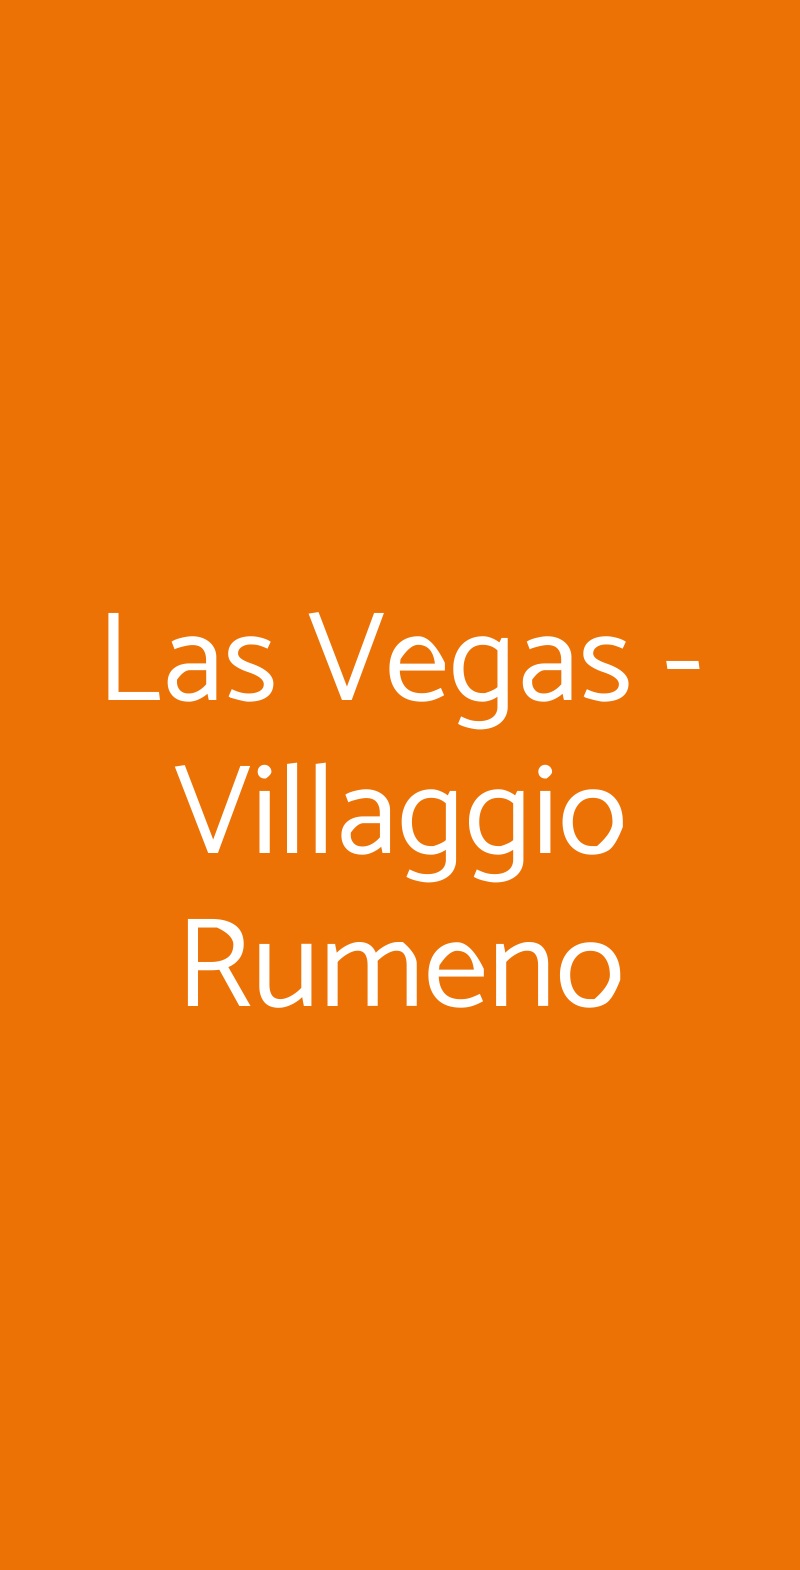 Las Vegas - Villaggio Rumeno Roma menù 1 pagina